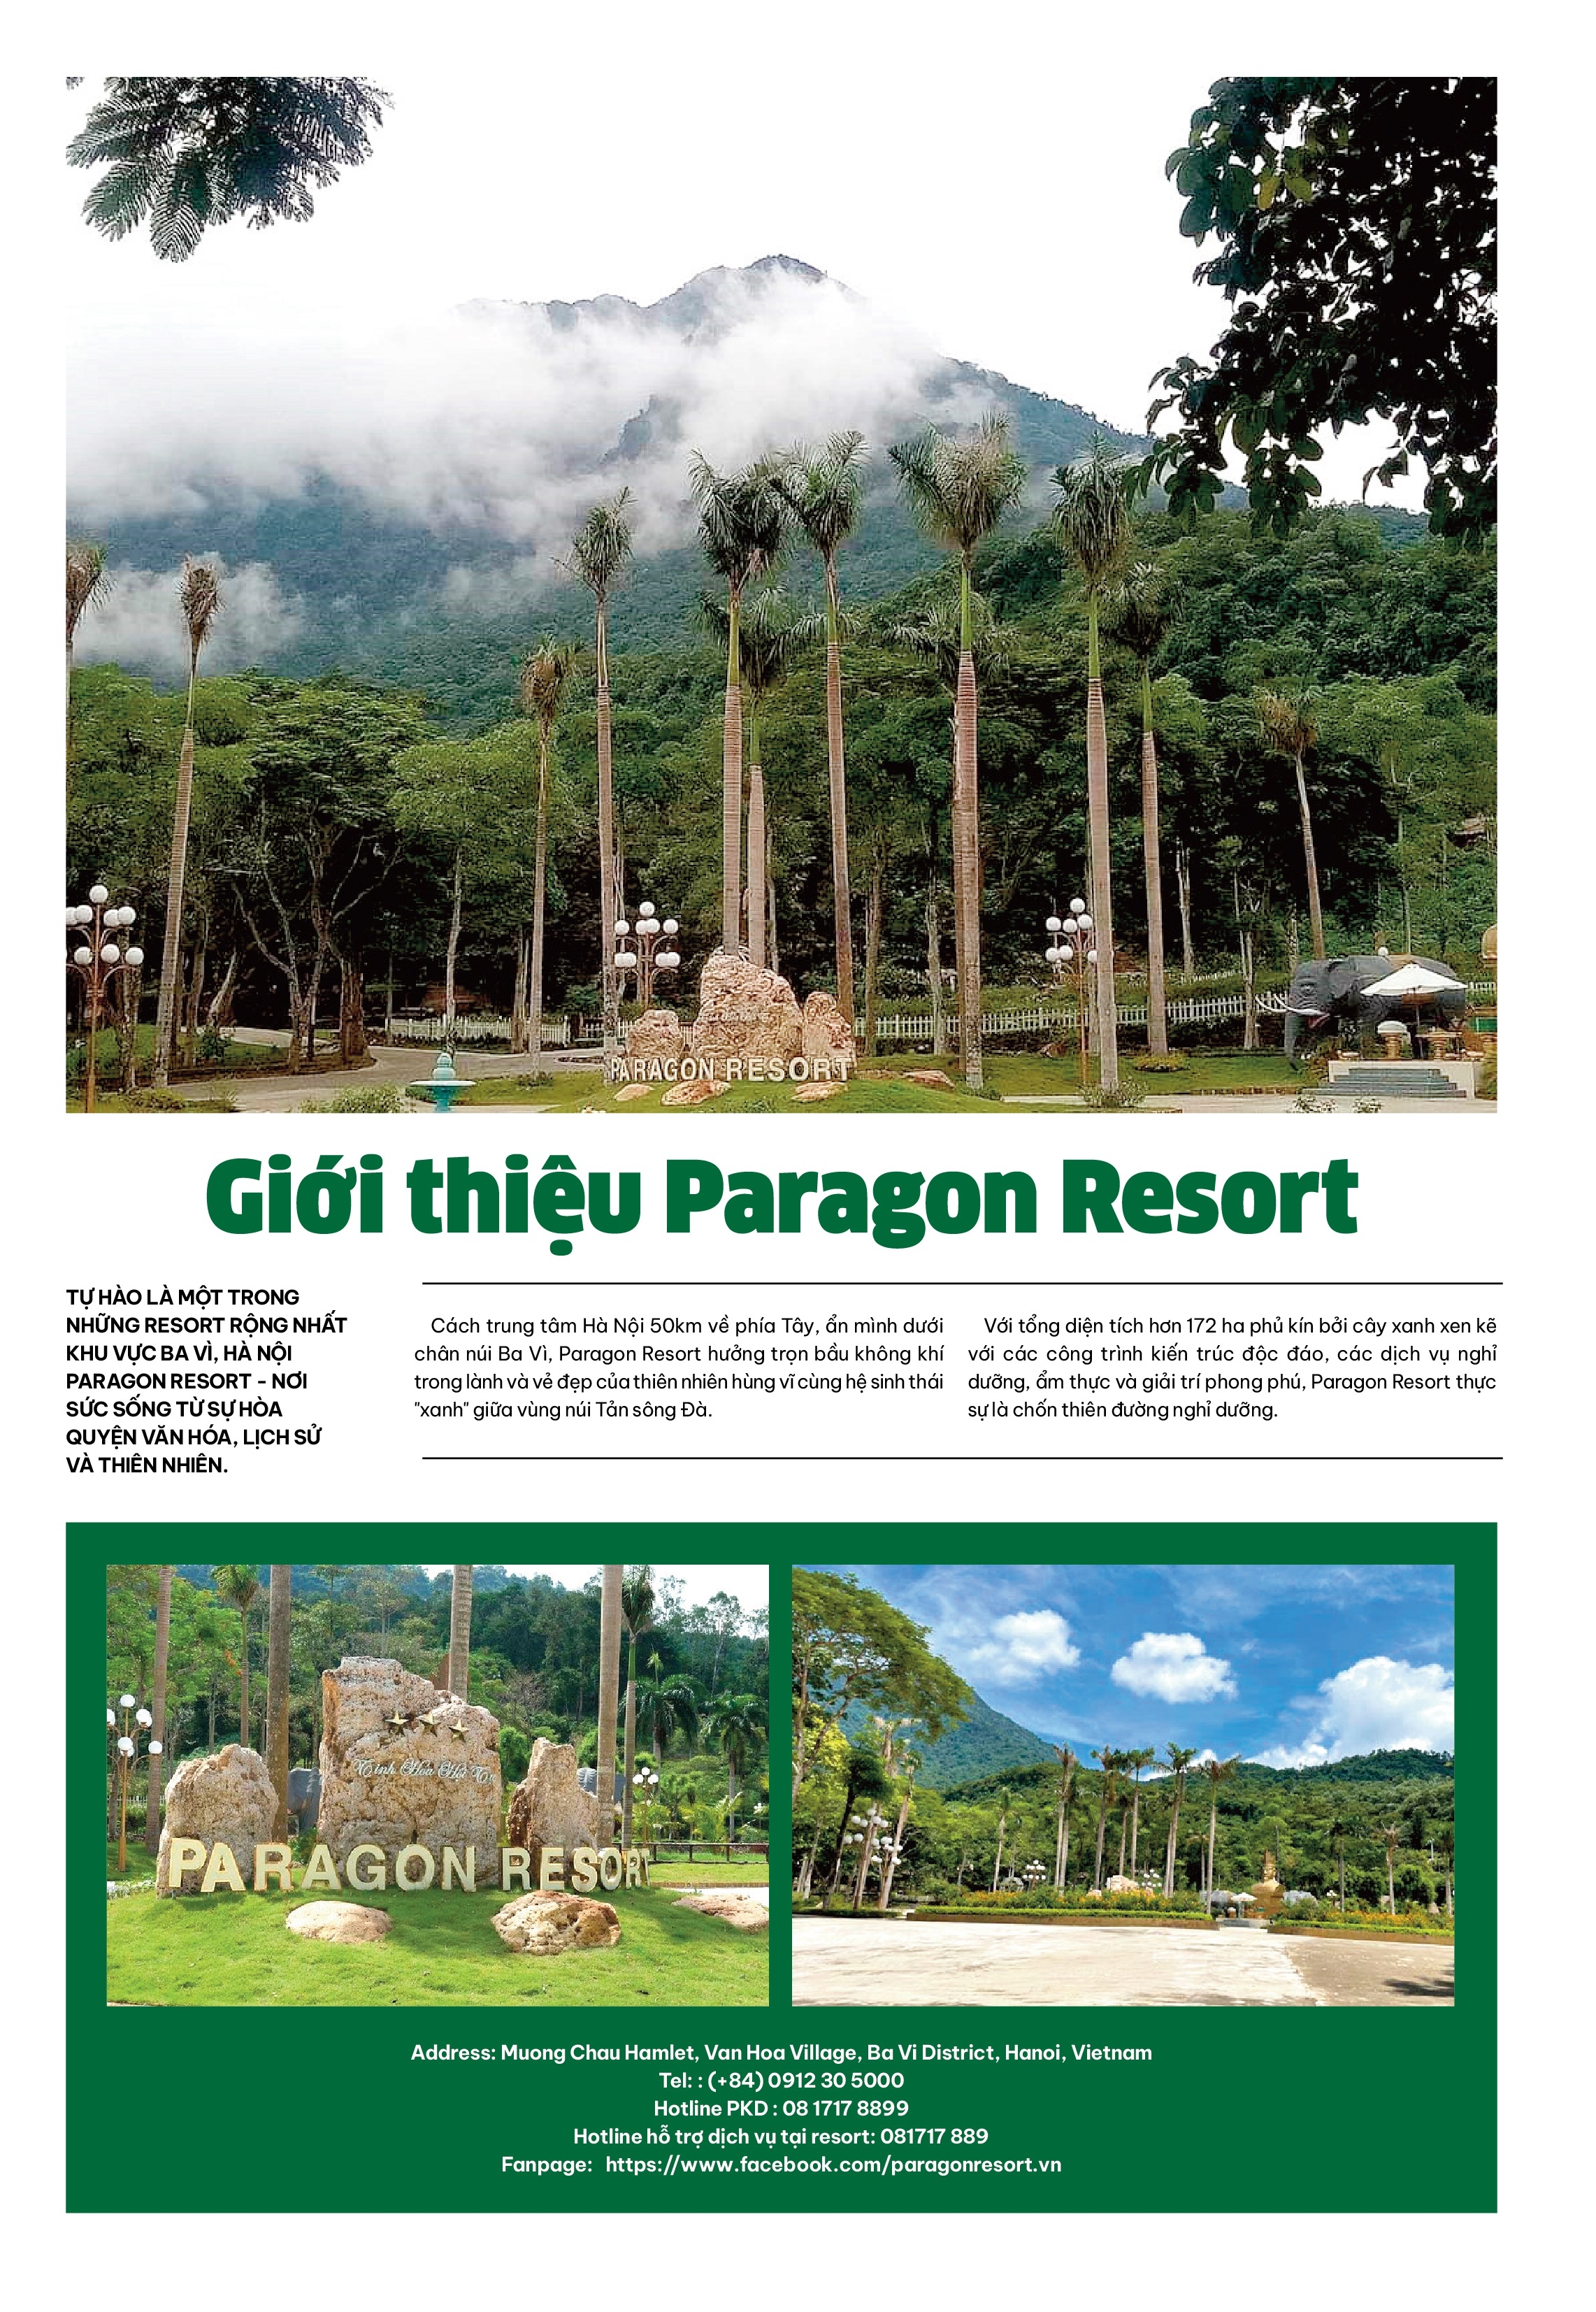 Paragon Resort - Nơi tinh hoa hội tụ - Điểm đến của Hà Nội